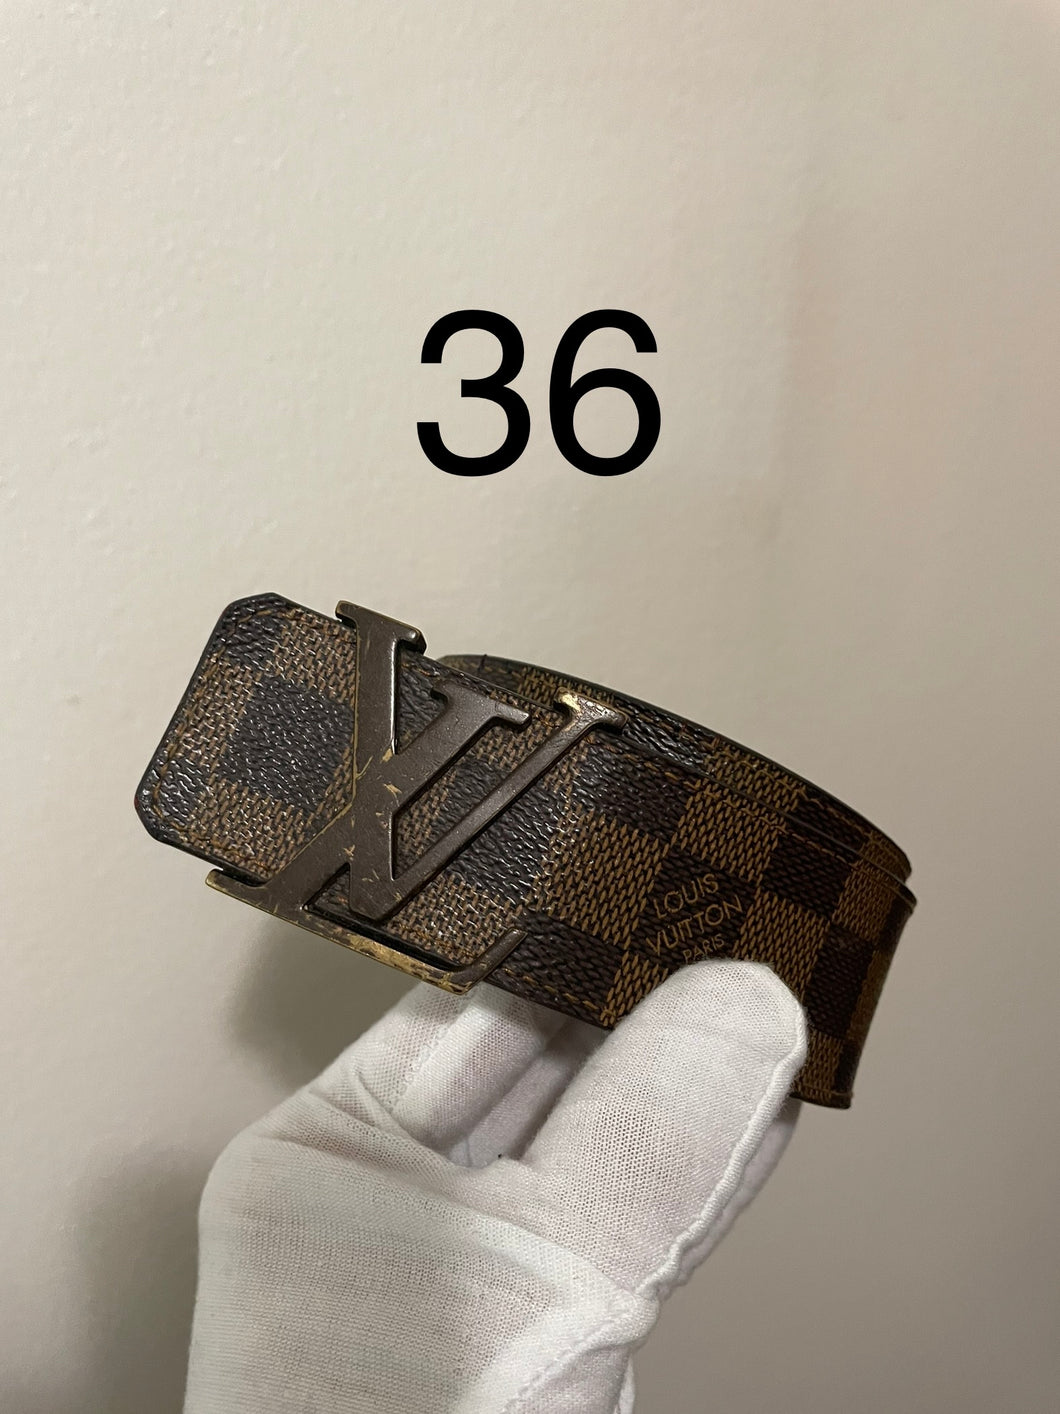 Louis Vuitton damier ebien initials belt sz 36 (fits 30-34)